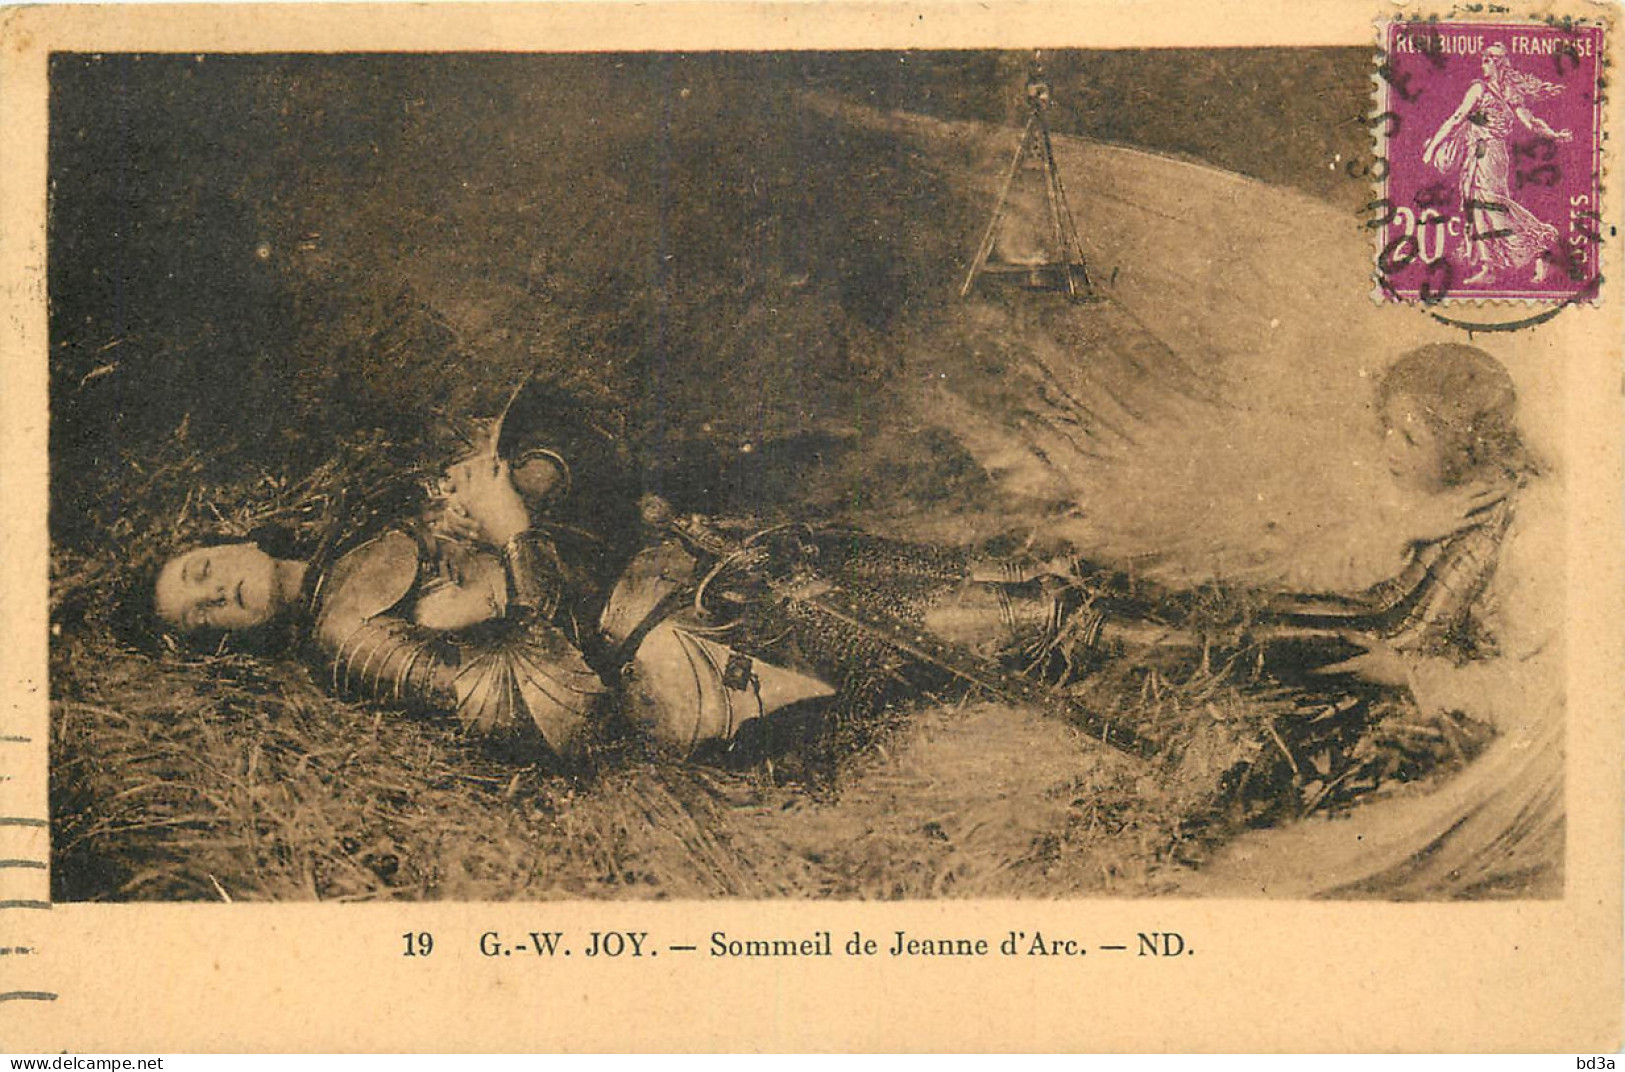 SOMMEIL DE JEANNE D'ARC - JOY - Historical Famous People